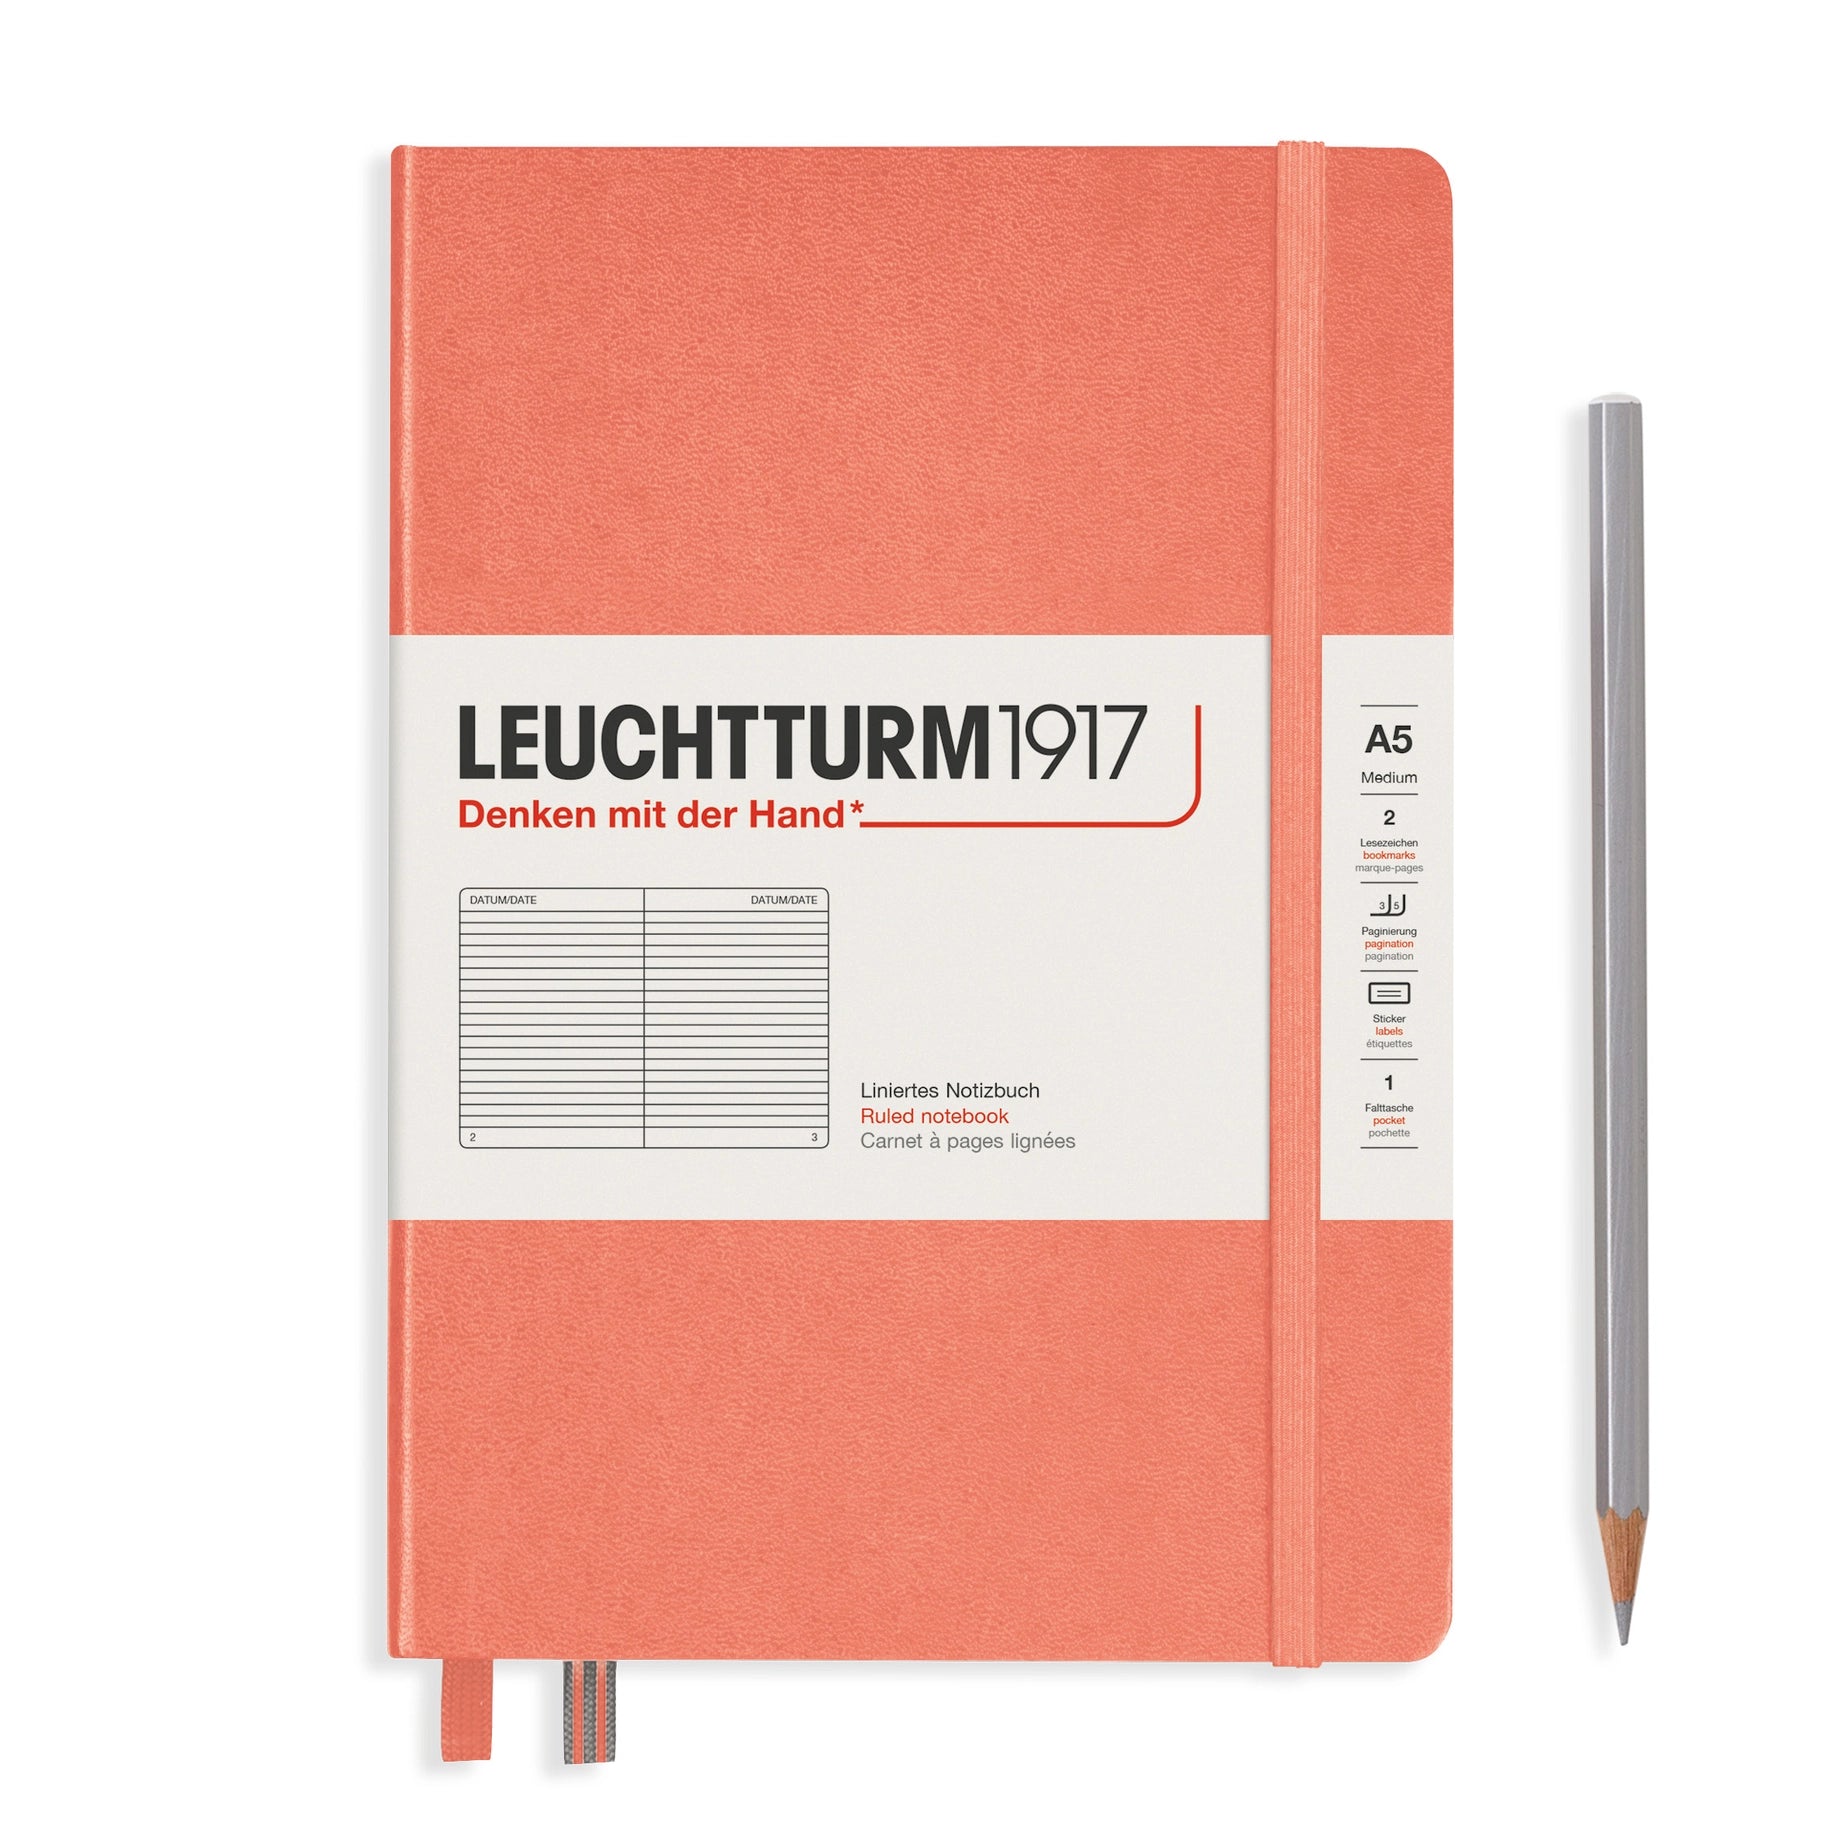 A5 Lined Notebook Softcover, LEUCHTTURM1917